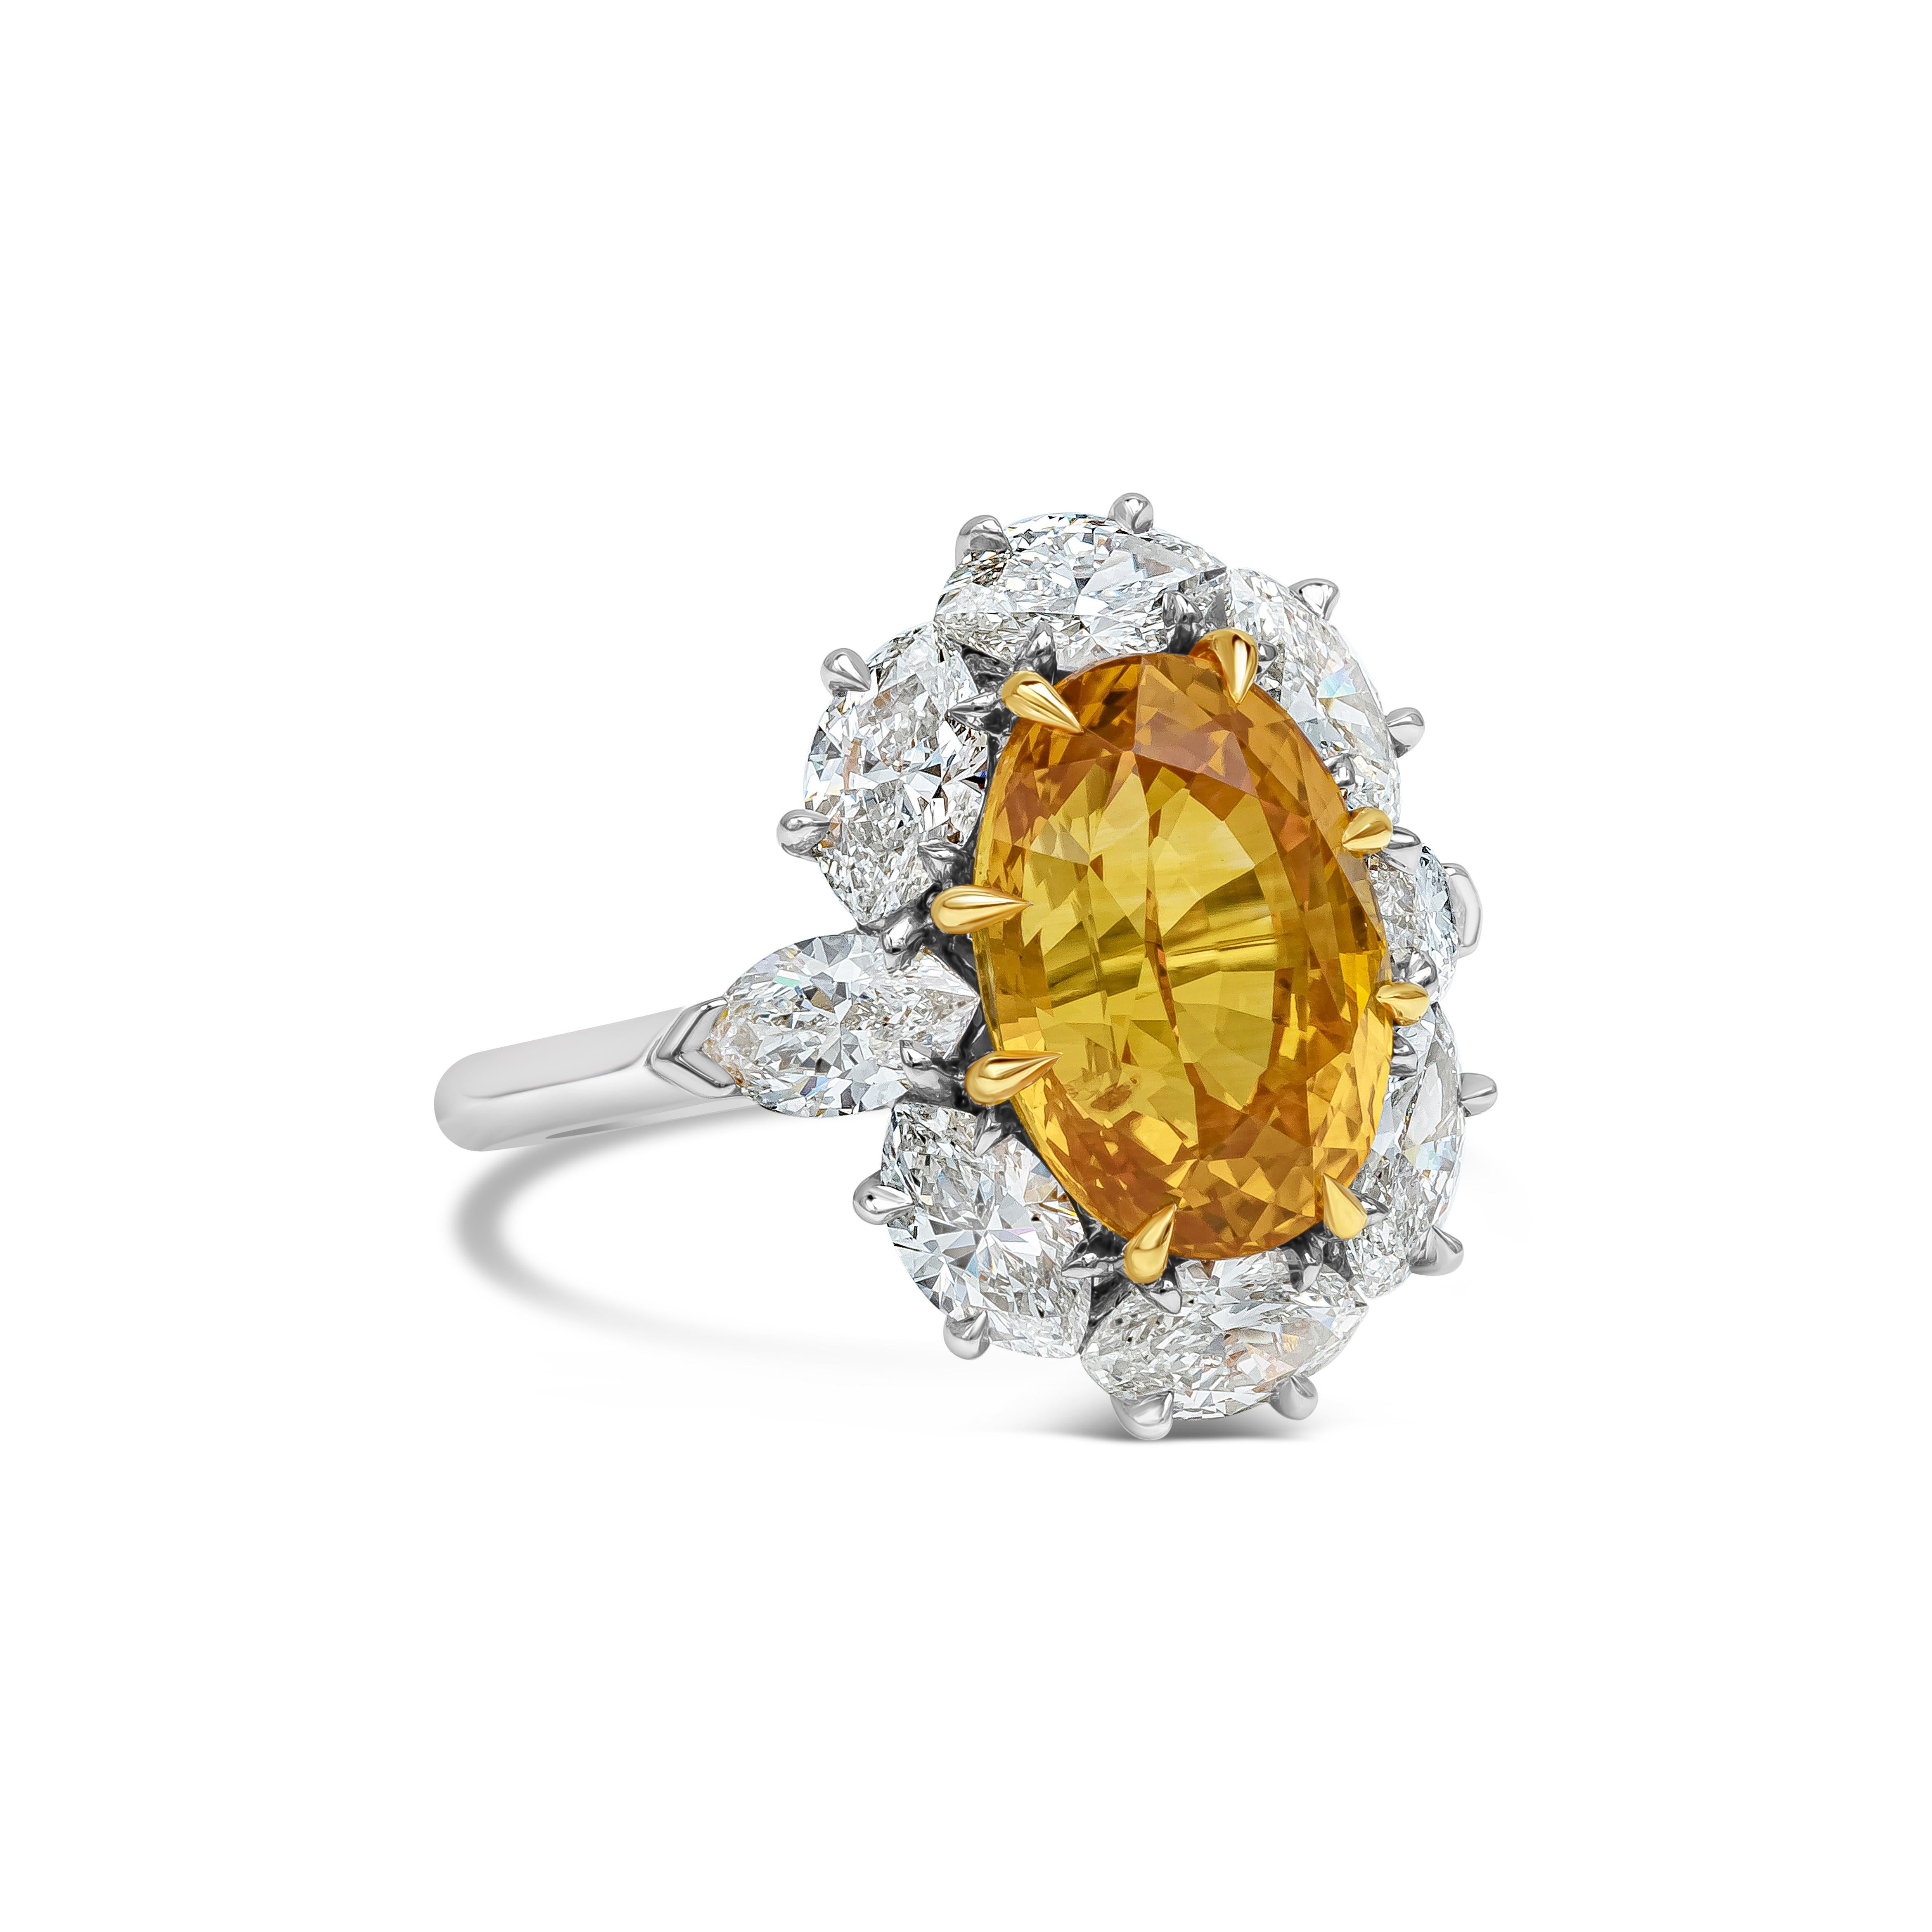 Ein farbenfroher Edelstein-Halo-Ring mit einem GIA-zertifizierten, oval geschliffenen orangefarbenen Saphir mit einem Gesamtgewicht von 6,64 Karat in einer achtzackigen Fassung aus 18 Karat Gelbgold. Umgeben von acht GIA-zertifizierten Diamanten im